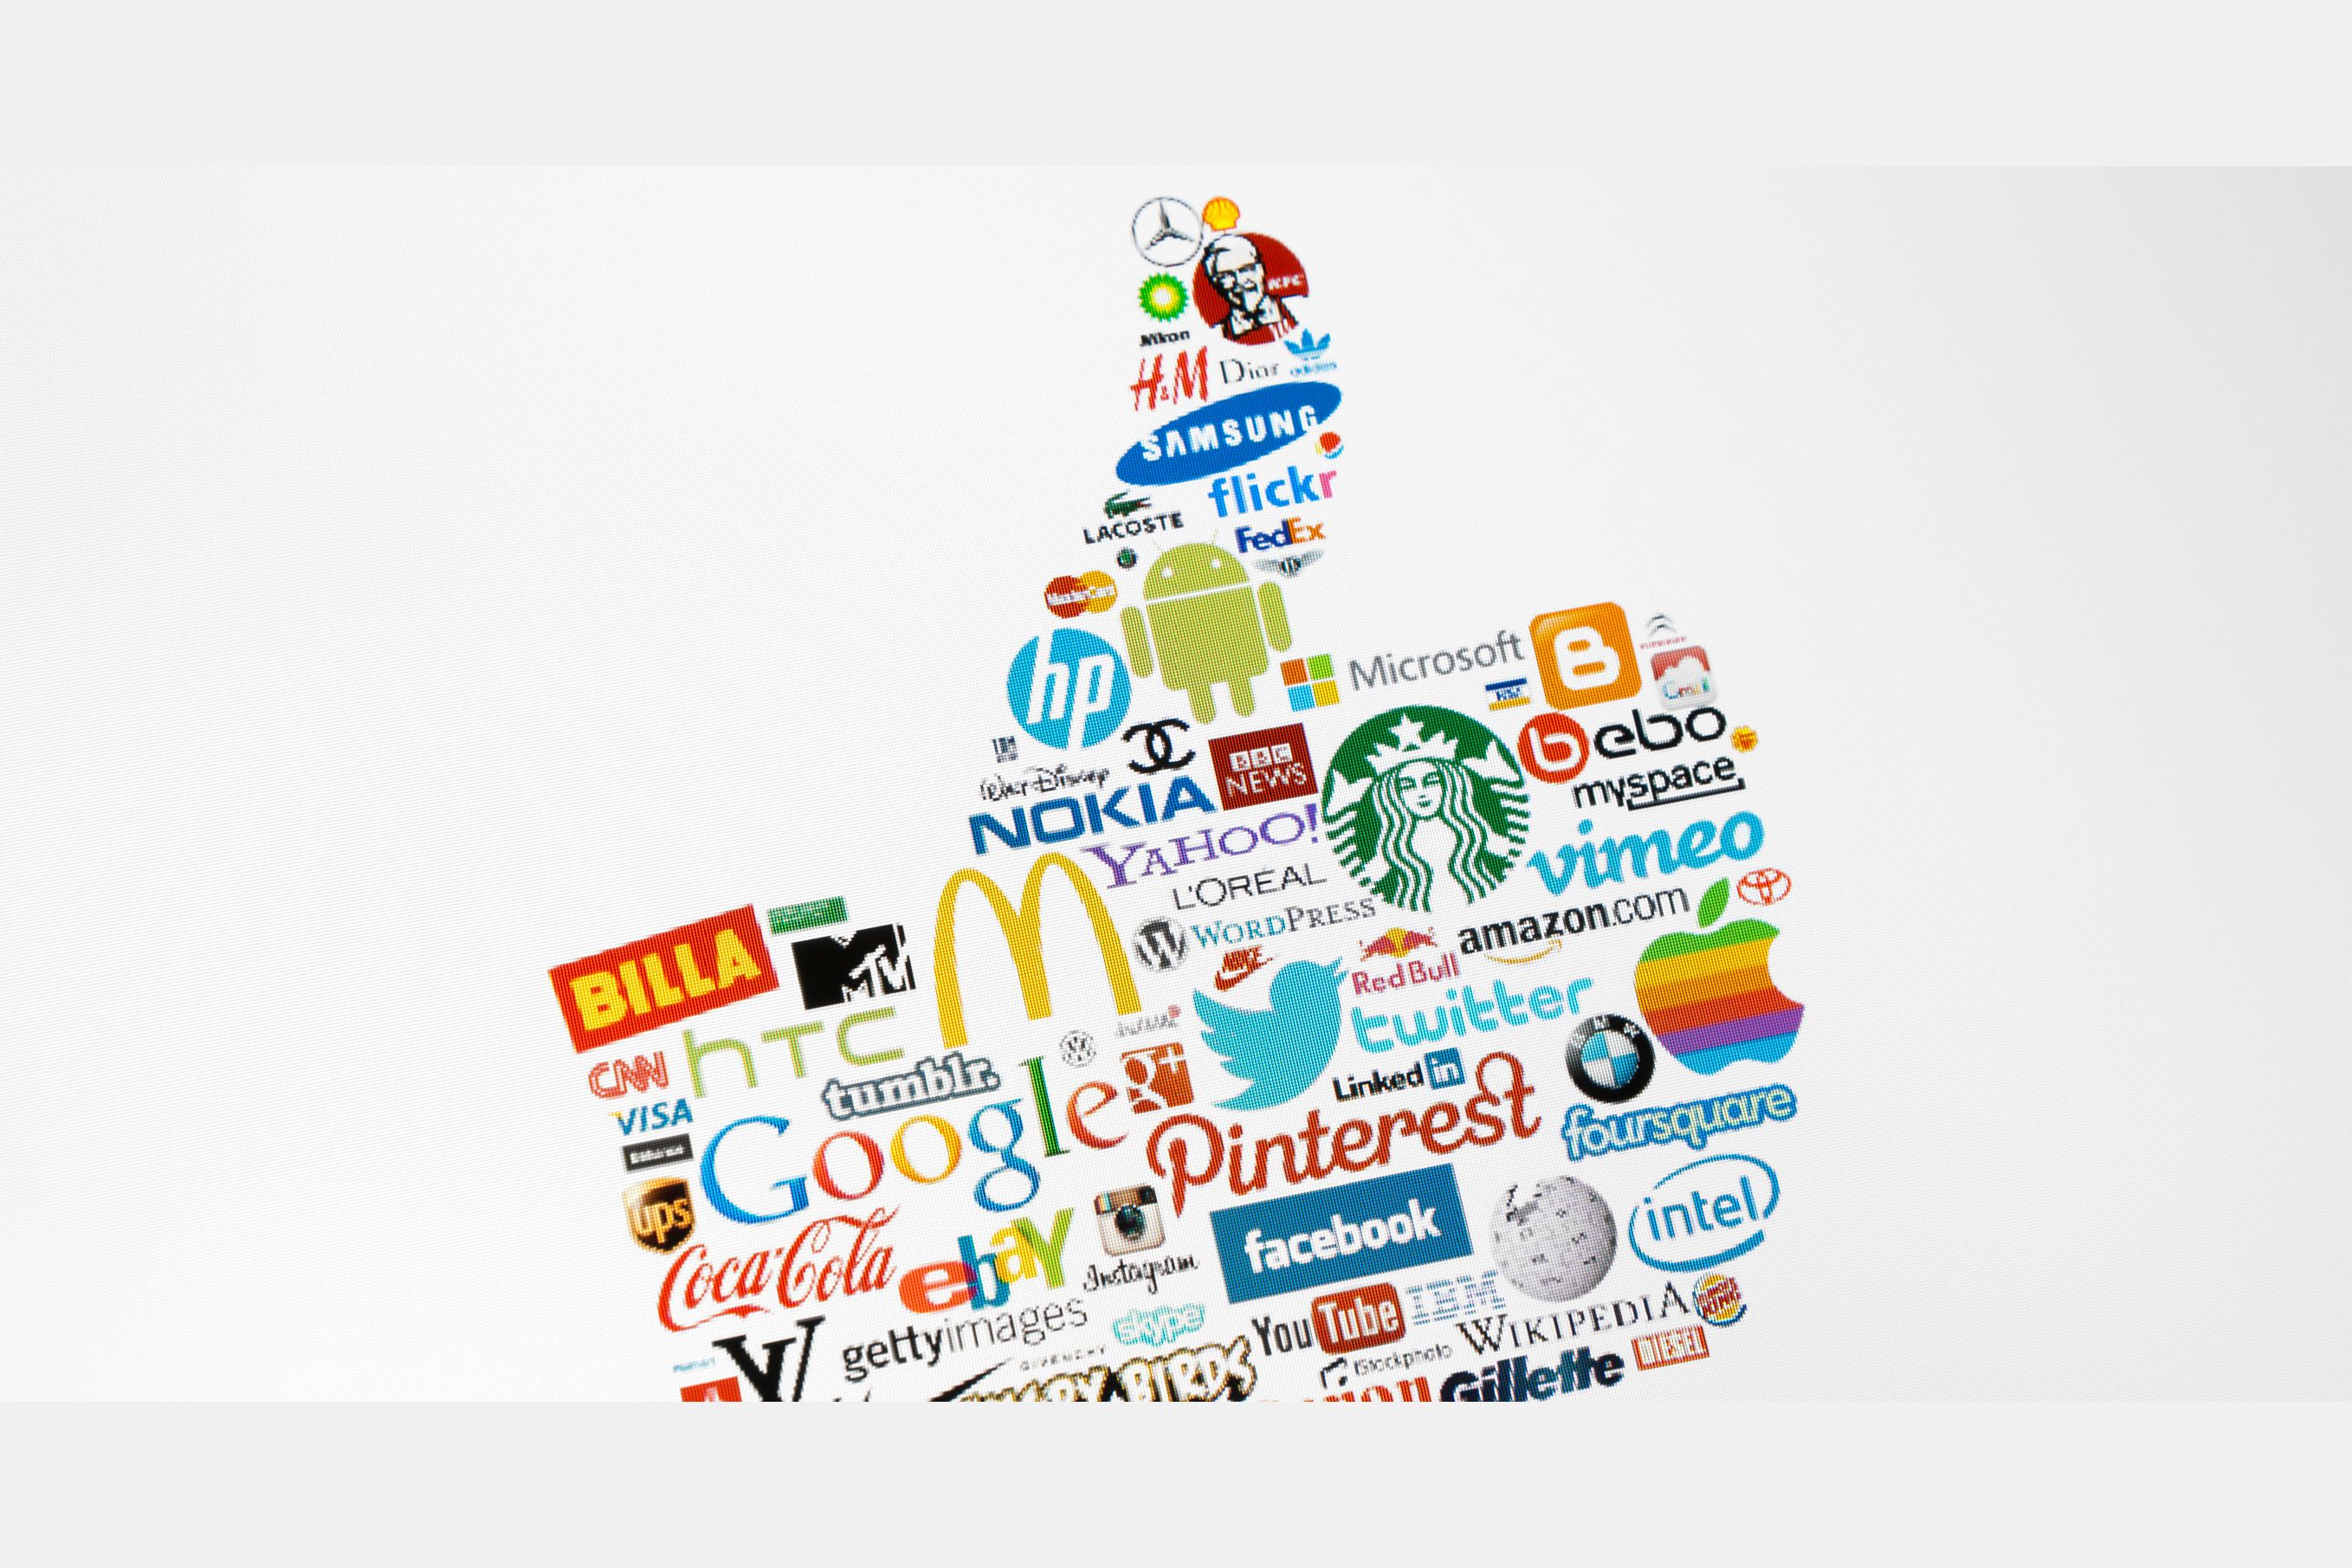 Маркетинговая кампания и рекламная кампания. Эмблемы компаний. Рекламные логотипы. Логотипы популярных компаний. Мировые бренды.